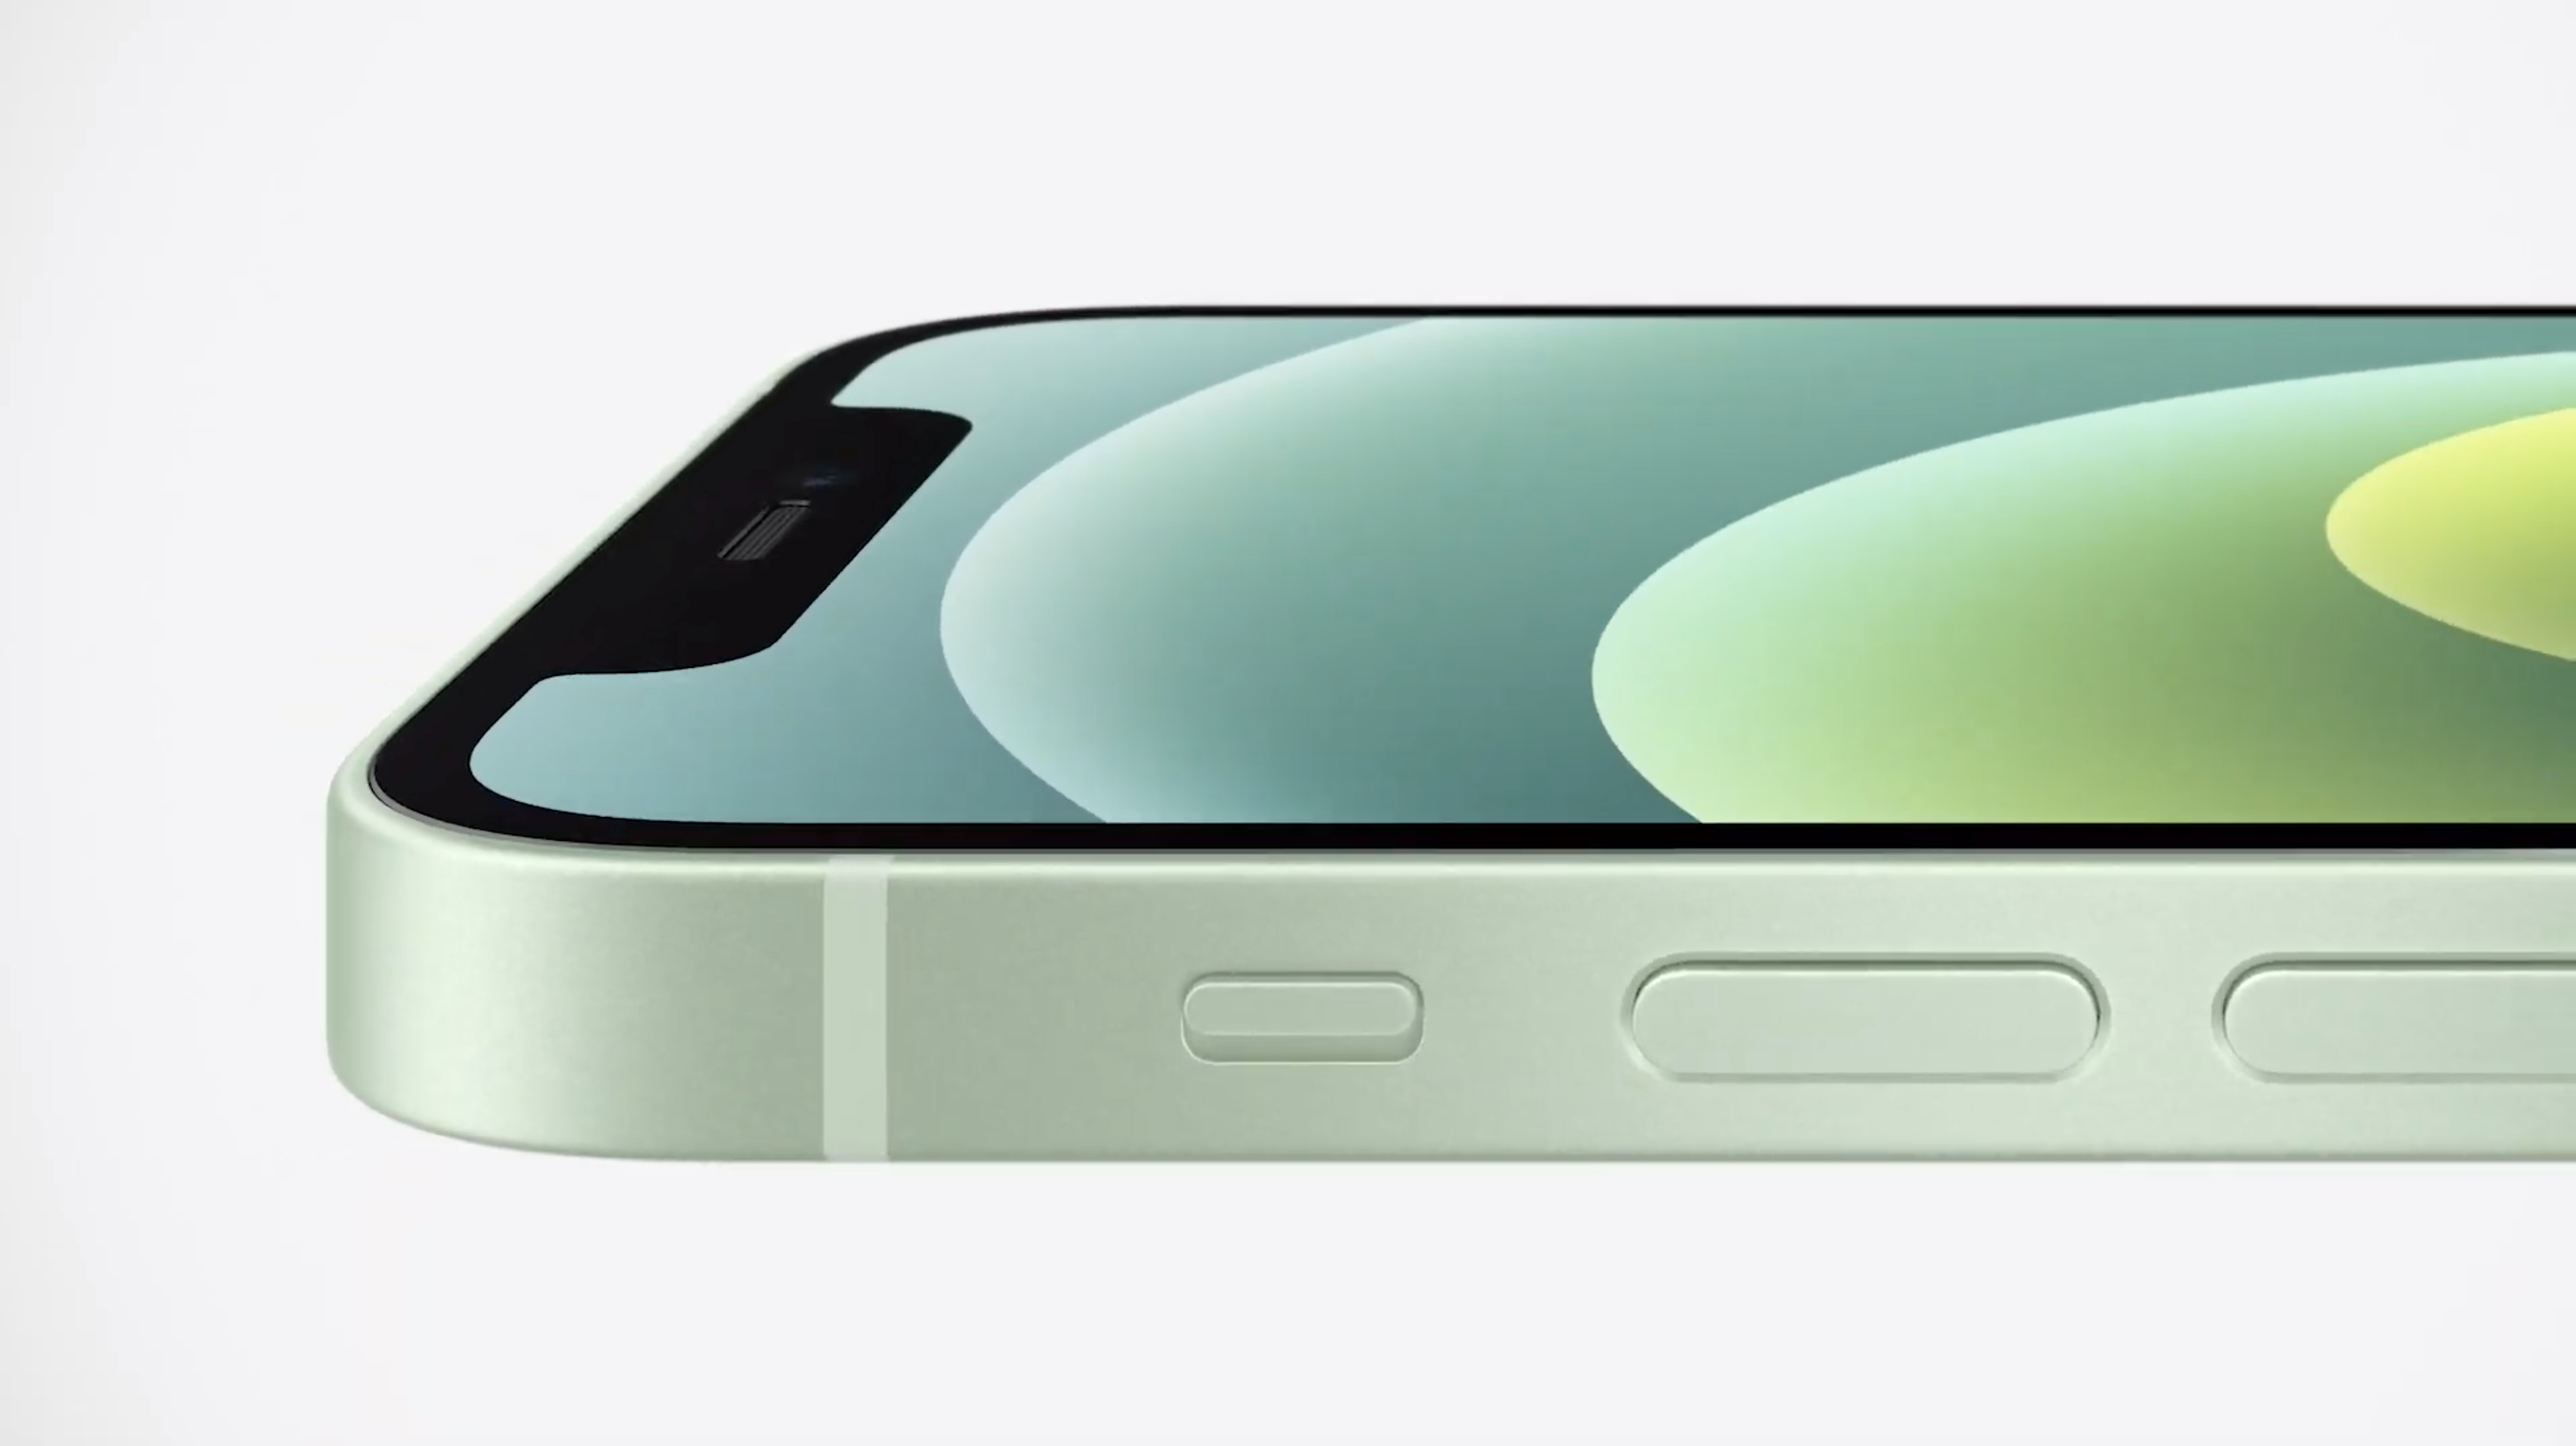 iPhone 12 mini vs iPhone SE: design